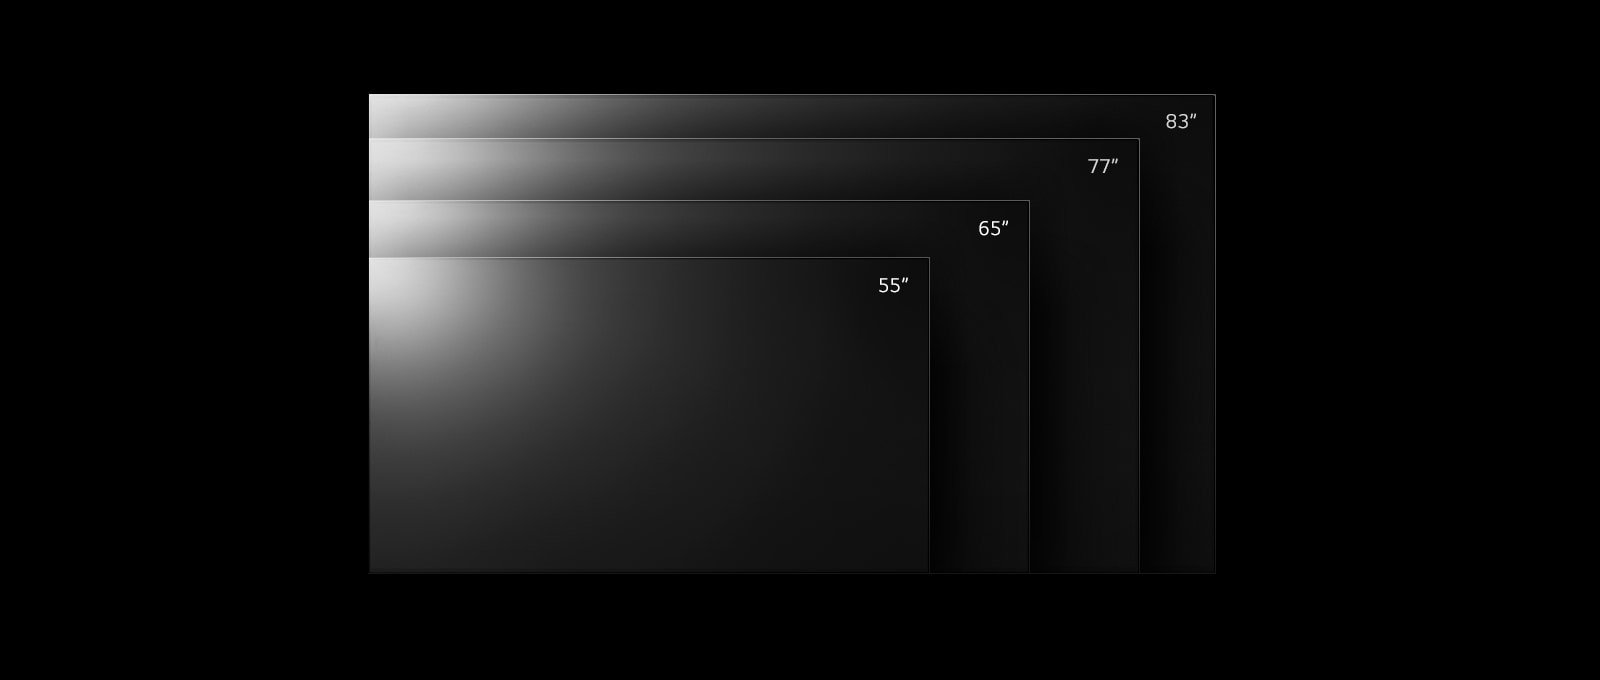 TV LG OLED G2 với các kích thước từ 55 inch đến 83 inch